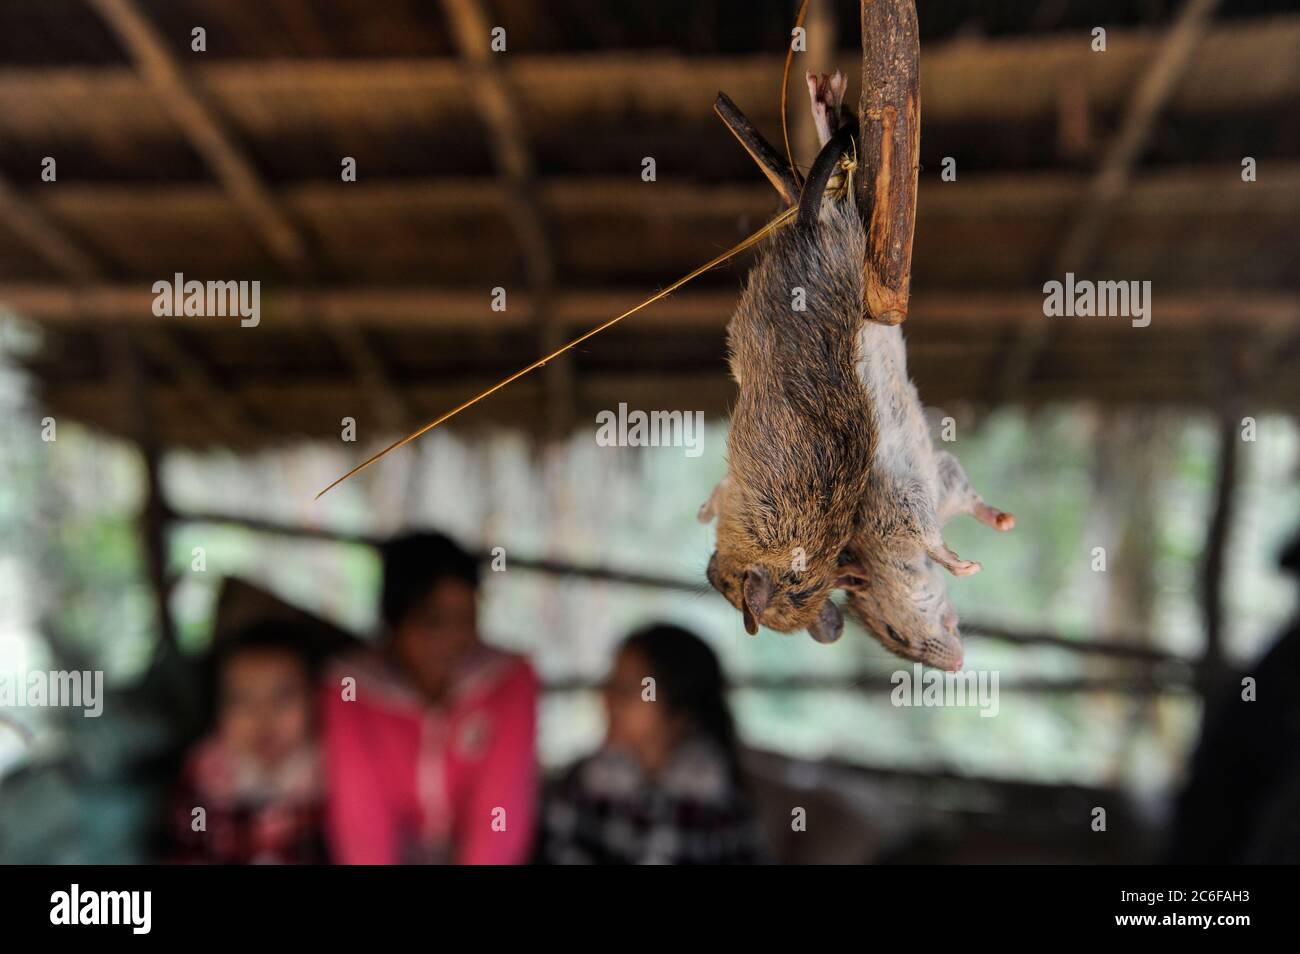 LAOS PDR, mercado con roedores para la venta para comer, los animales salvajes causan la transmisión del virus de los animales a los humanos / Laos, Bergbewohner verkaufen wilde Tiere, Nagetiere zum essen, Übertragung von Krankheiten Foto de stock